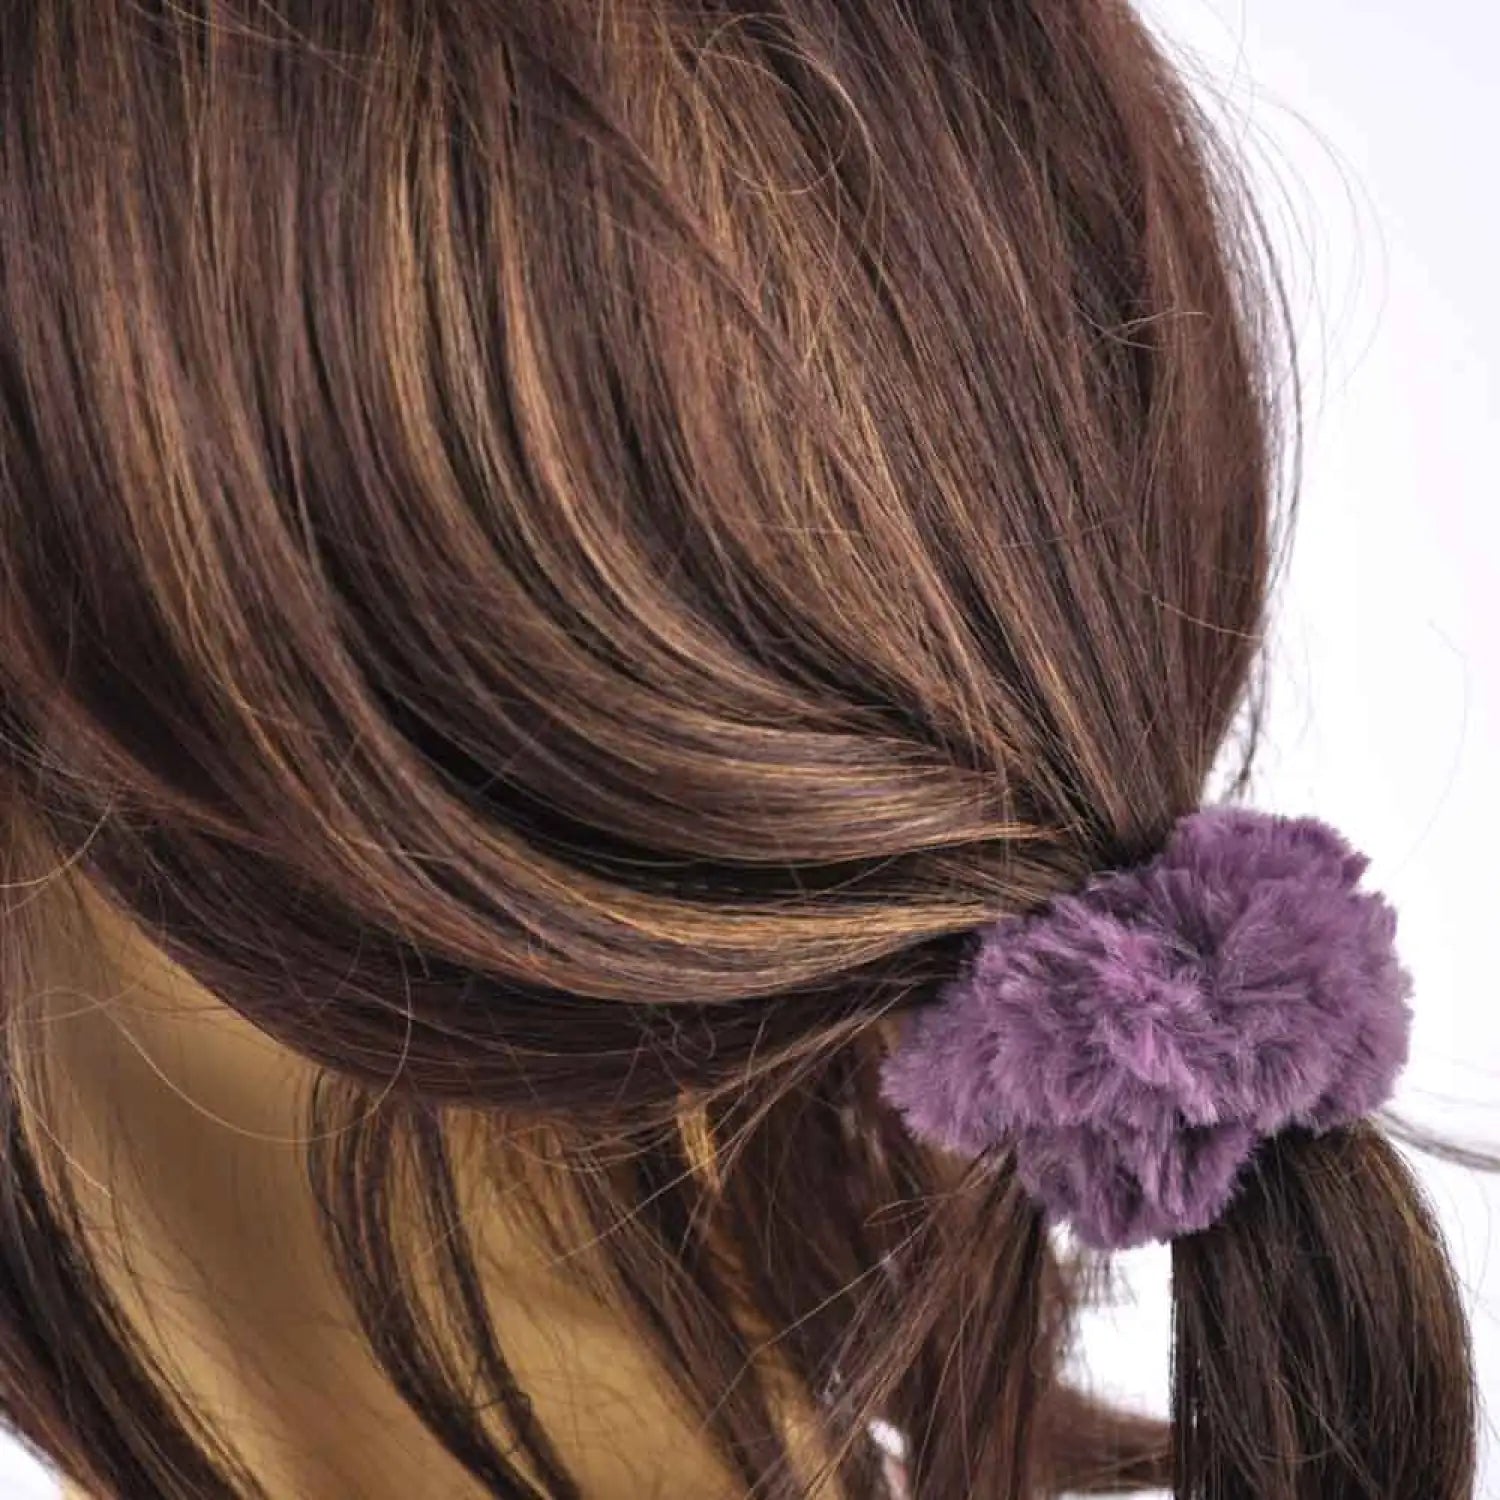 Woman wearing faux fur scrunchie with purple flower in hair